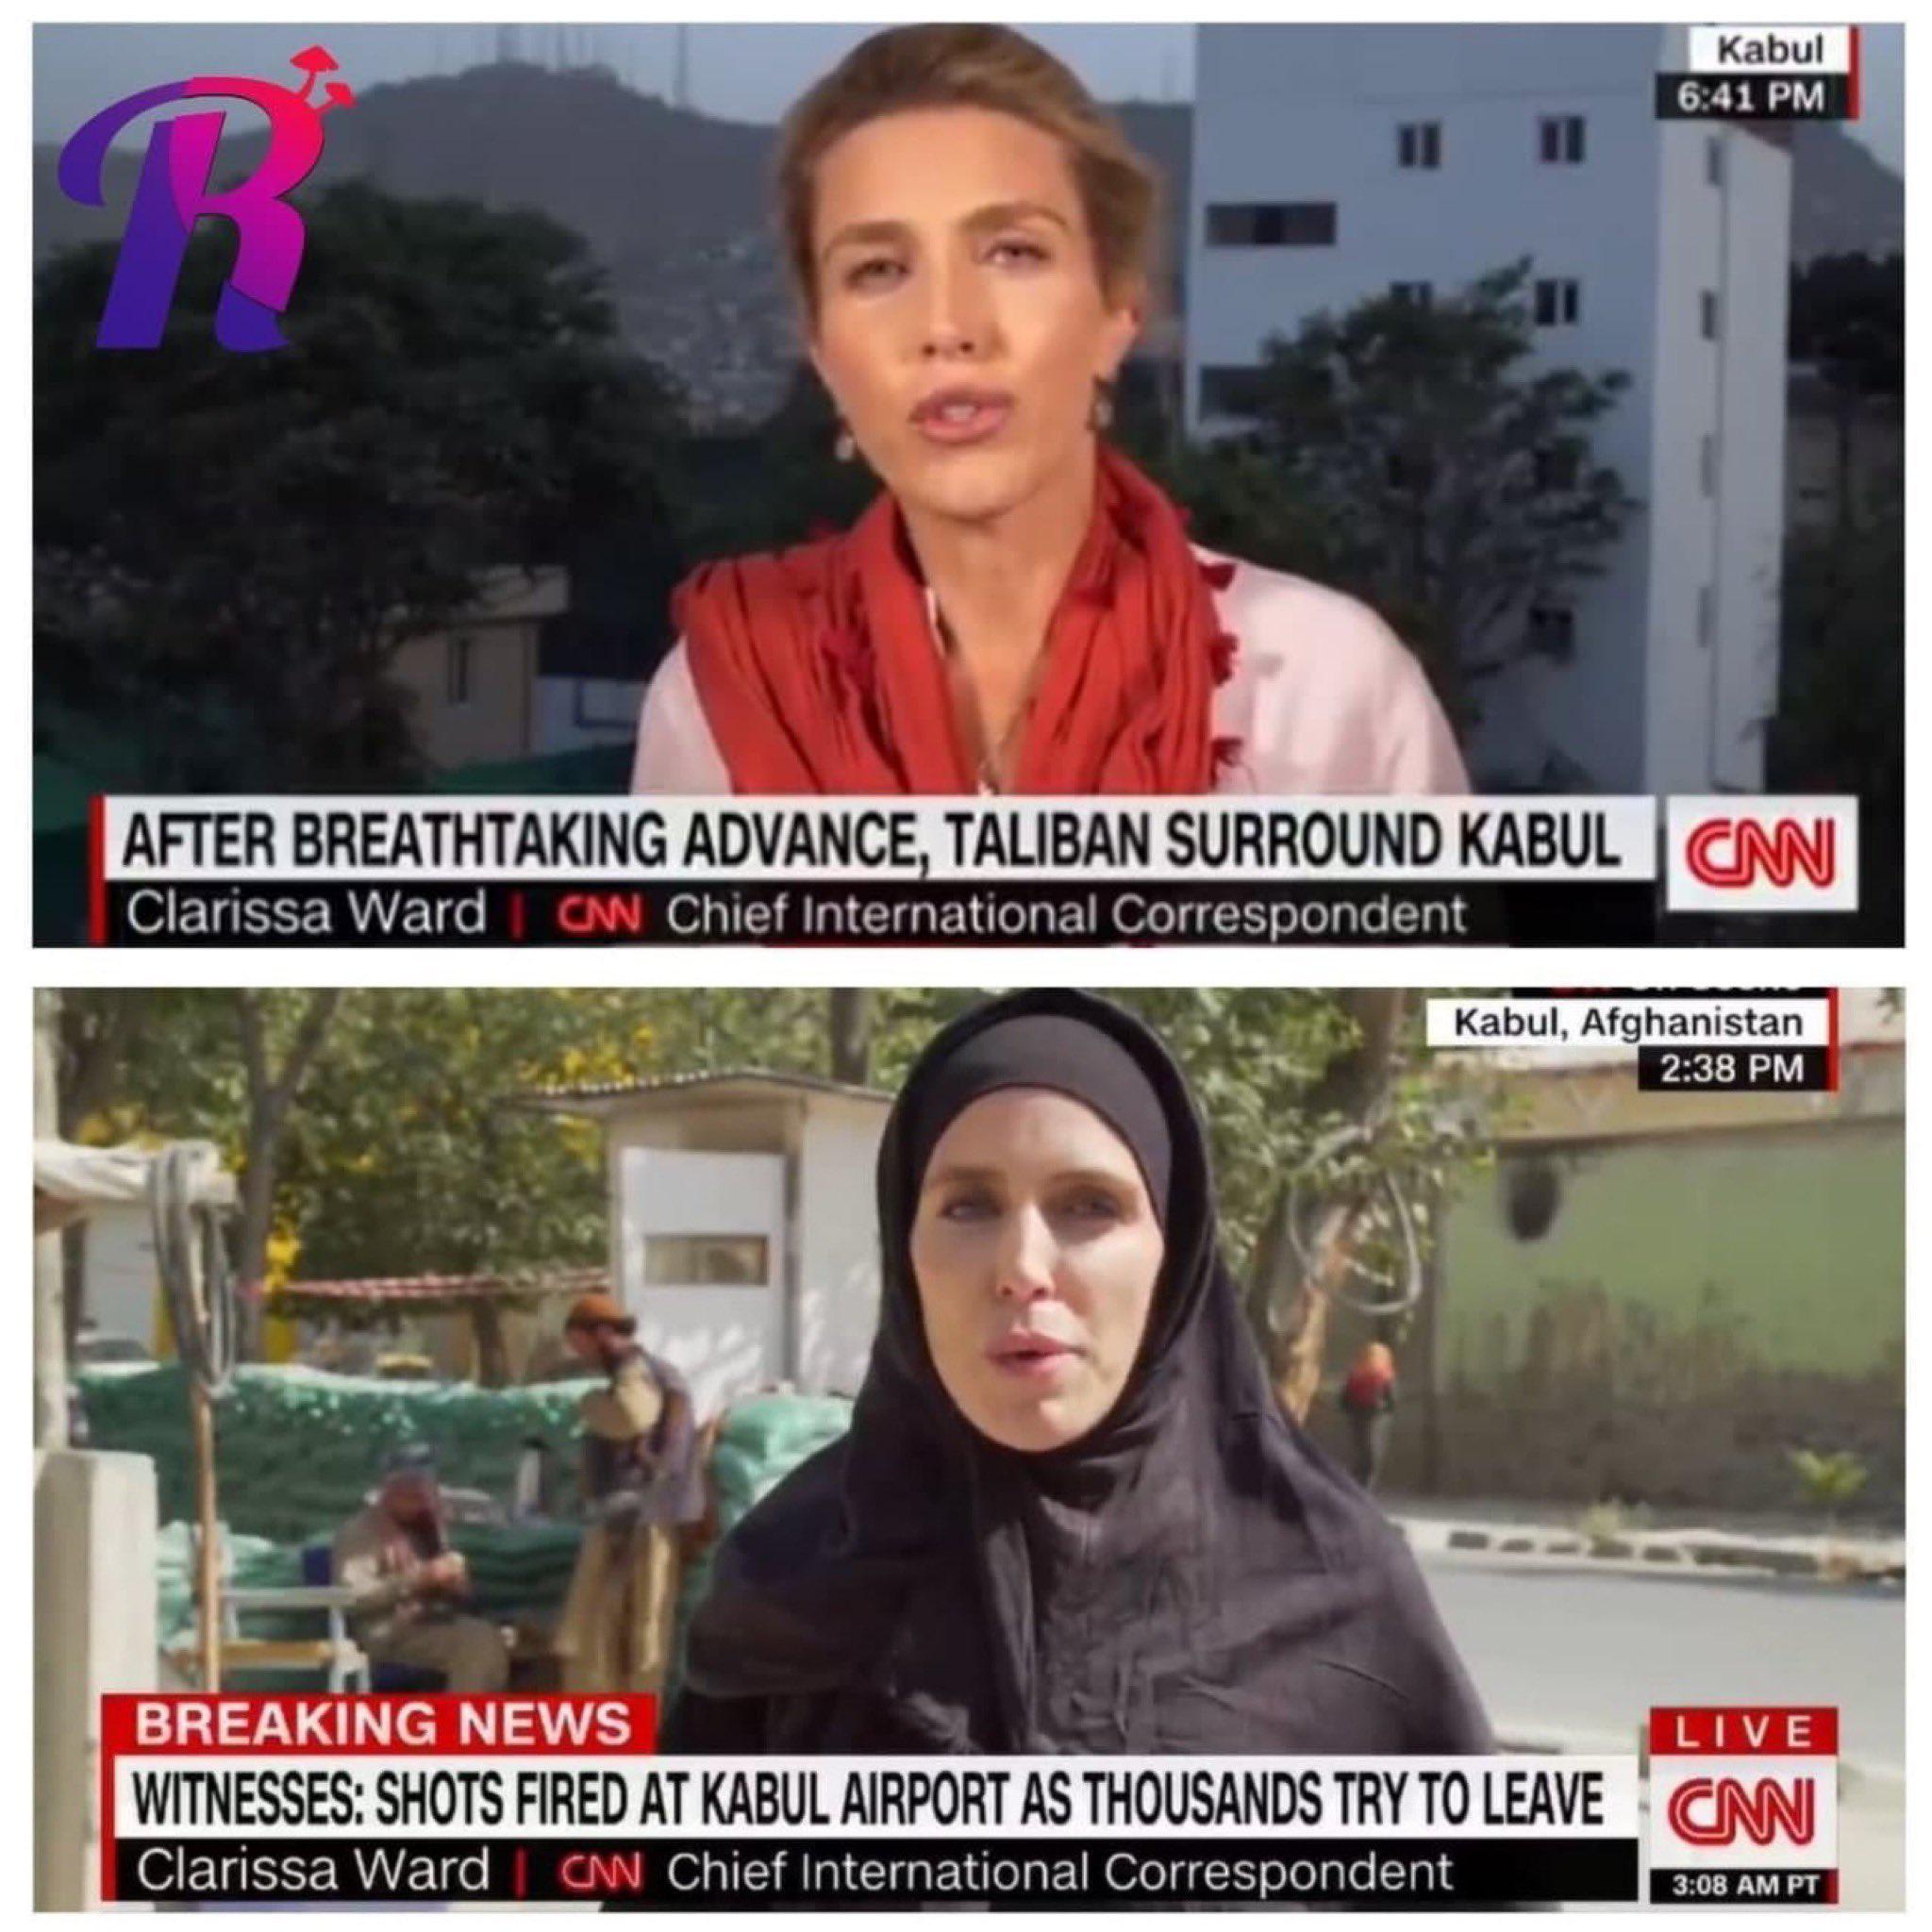 Kabilin ele geçirilmesinden sonra CNN muhabiri Clarissa Wardın 24 saat içindeki değişimi